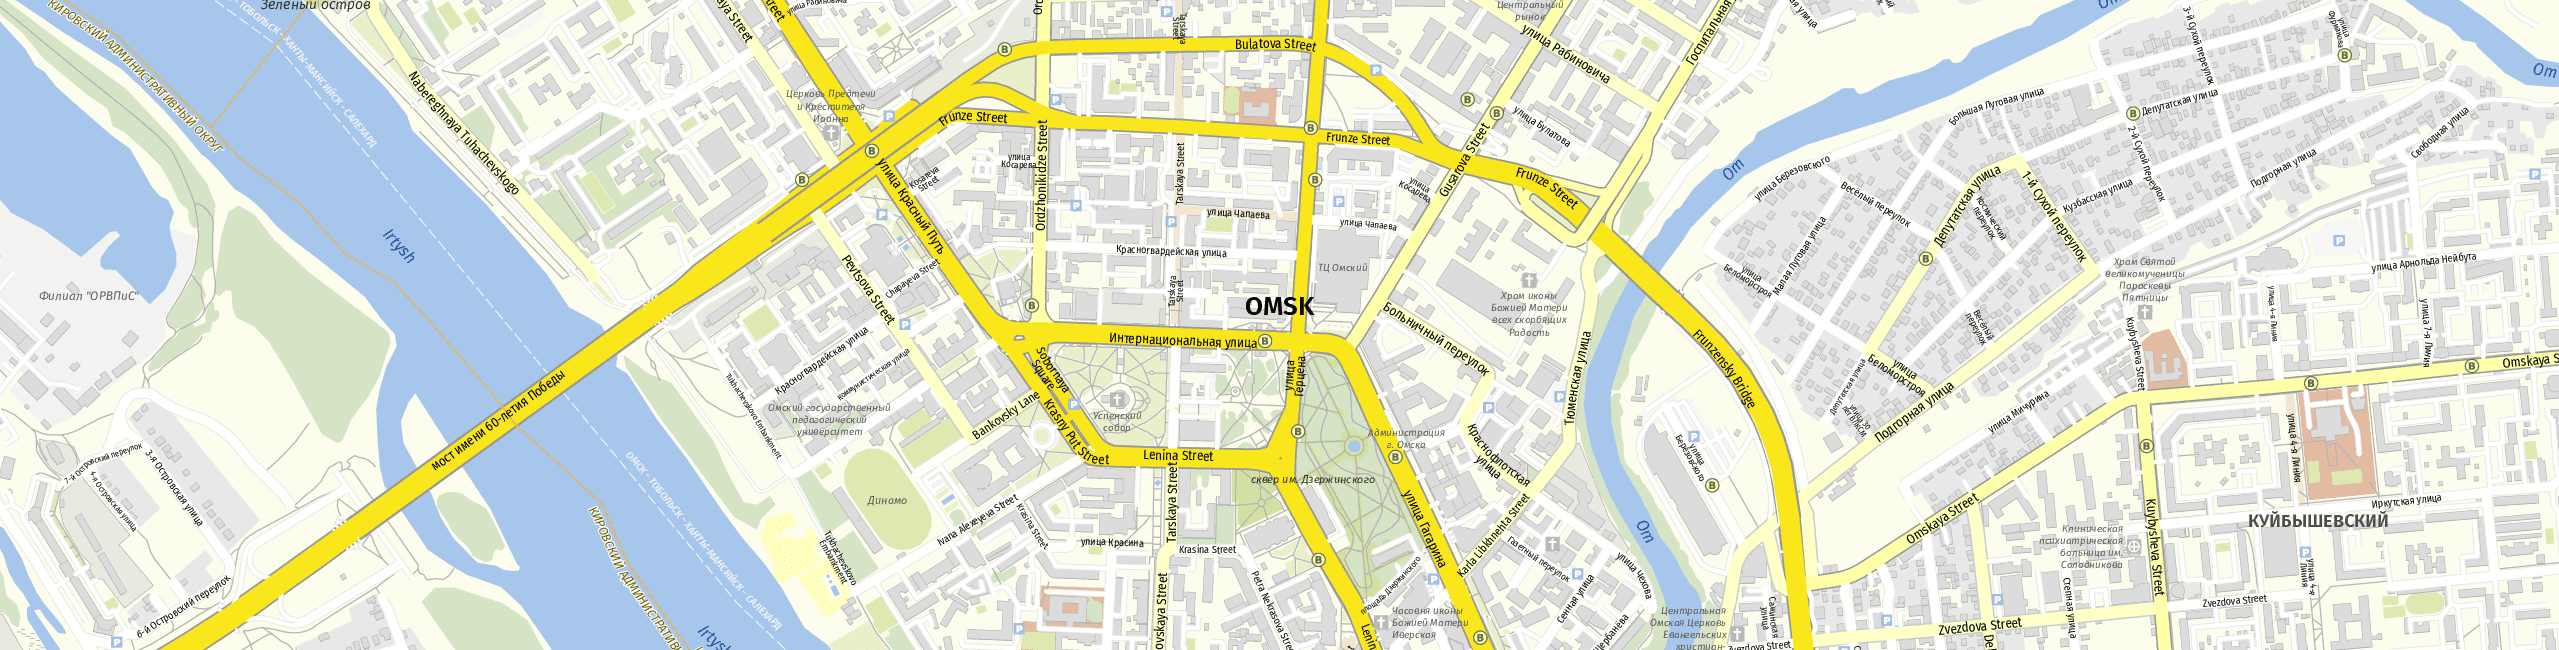 Stadtplan Omsk zum Downloaden.